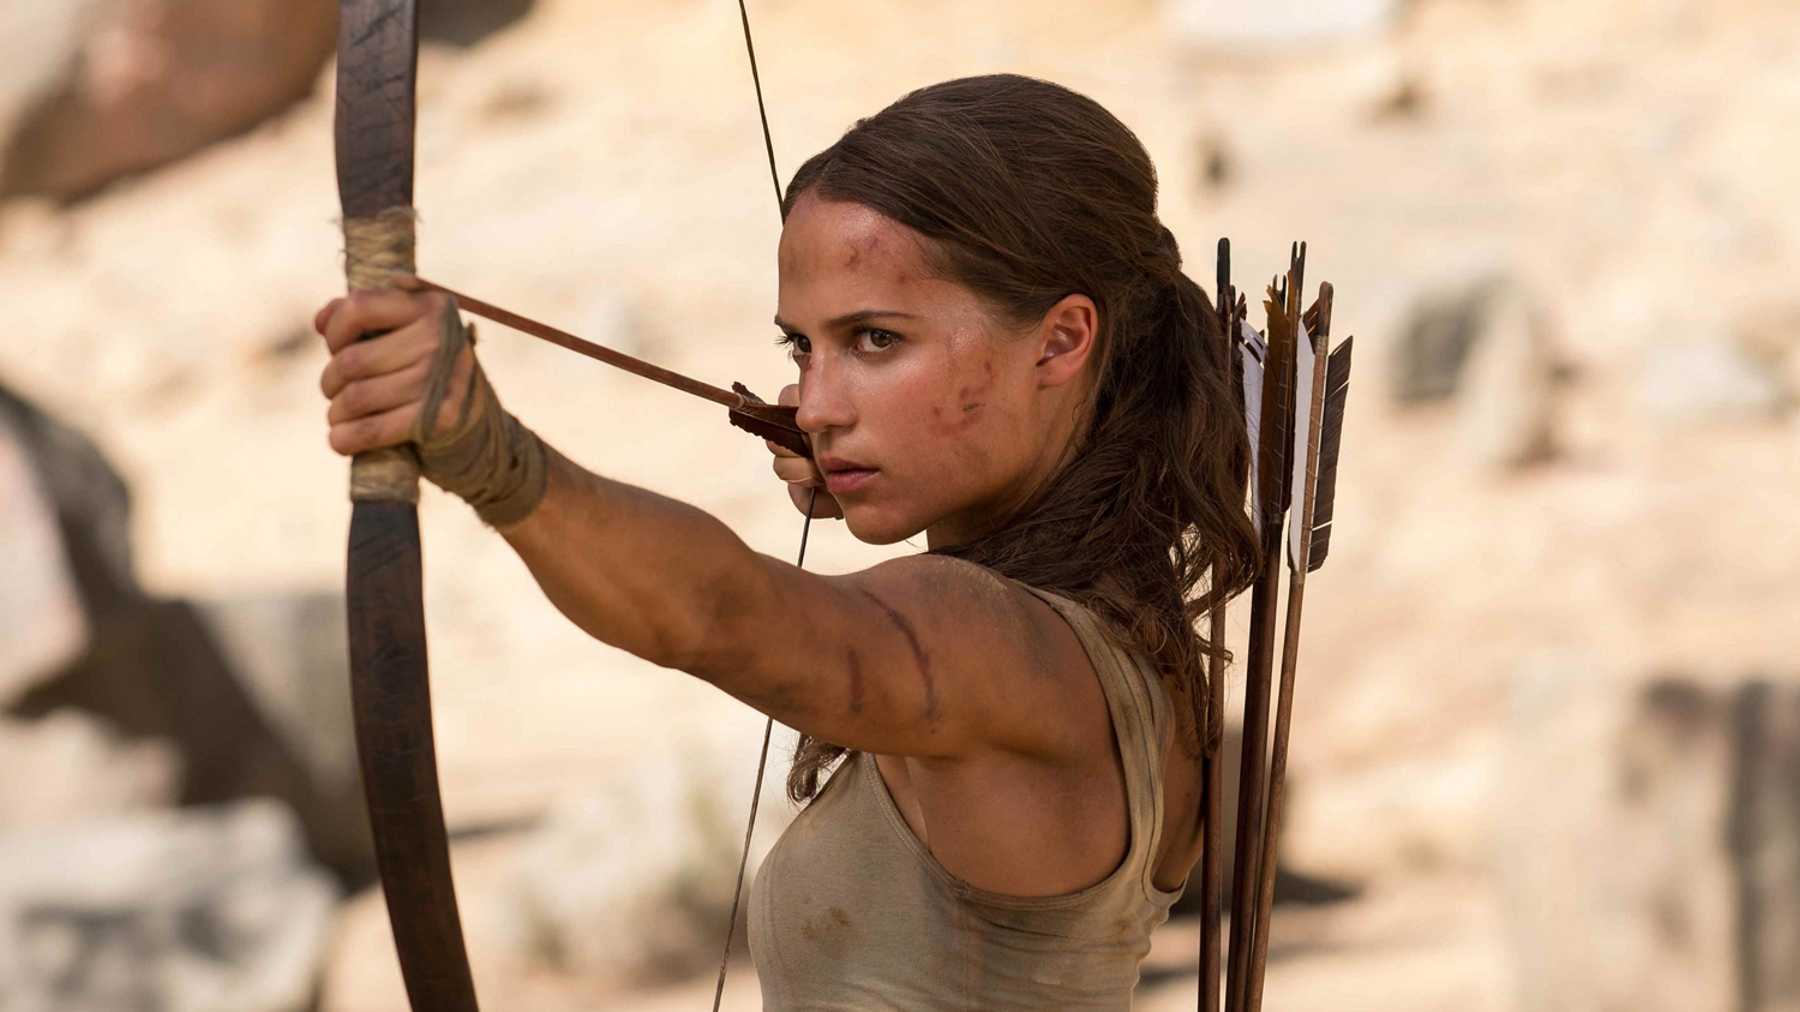 Elenco de Tomb Raider: atores do filme